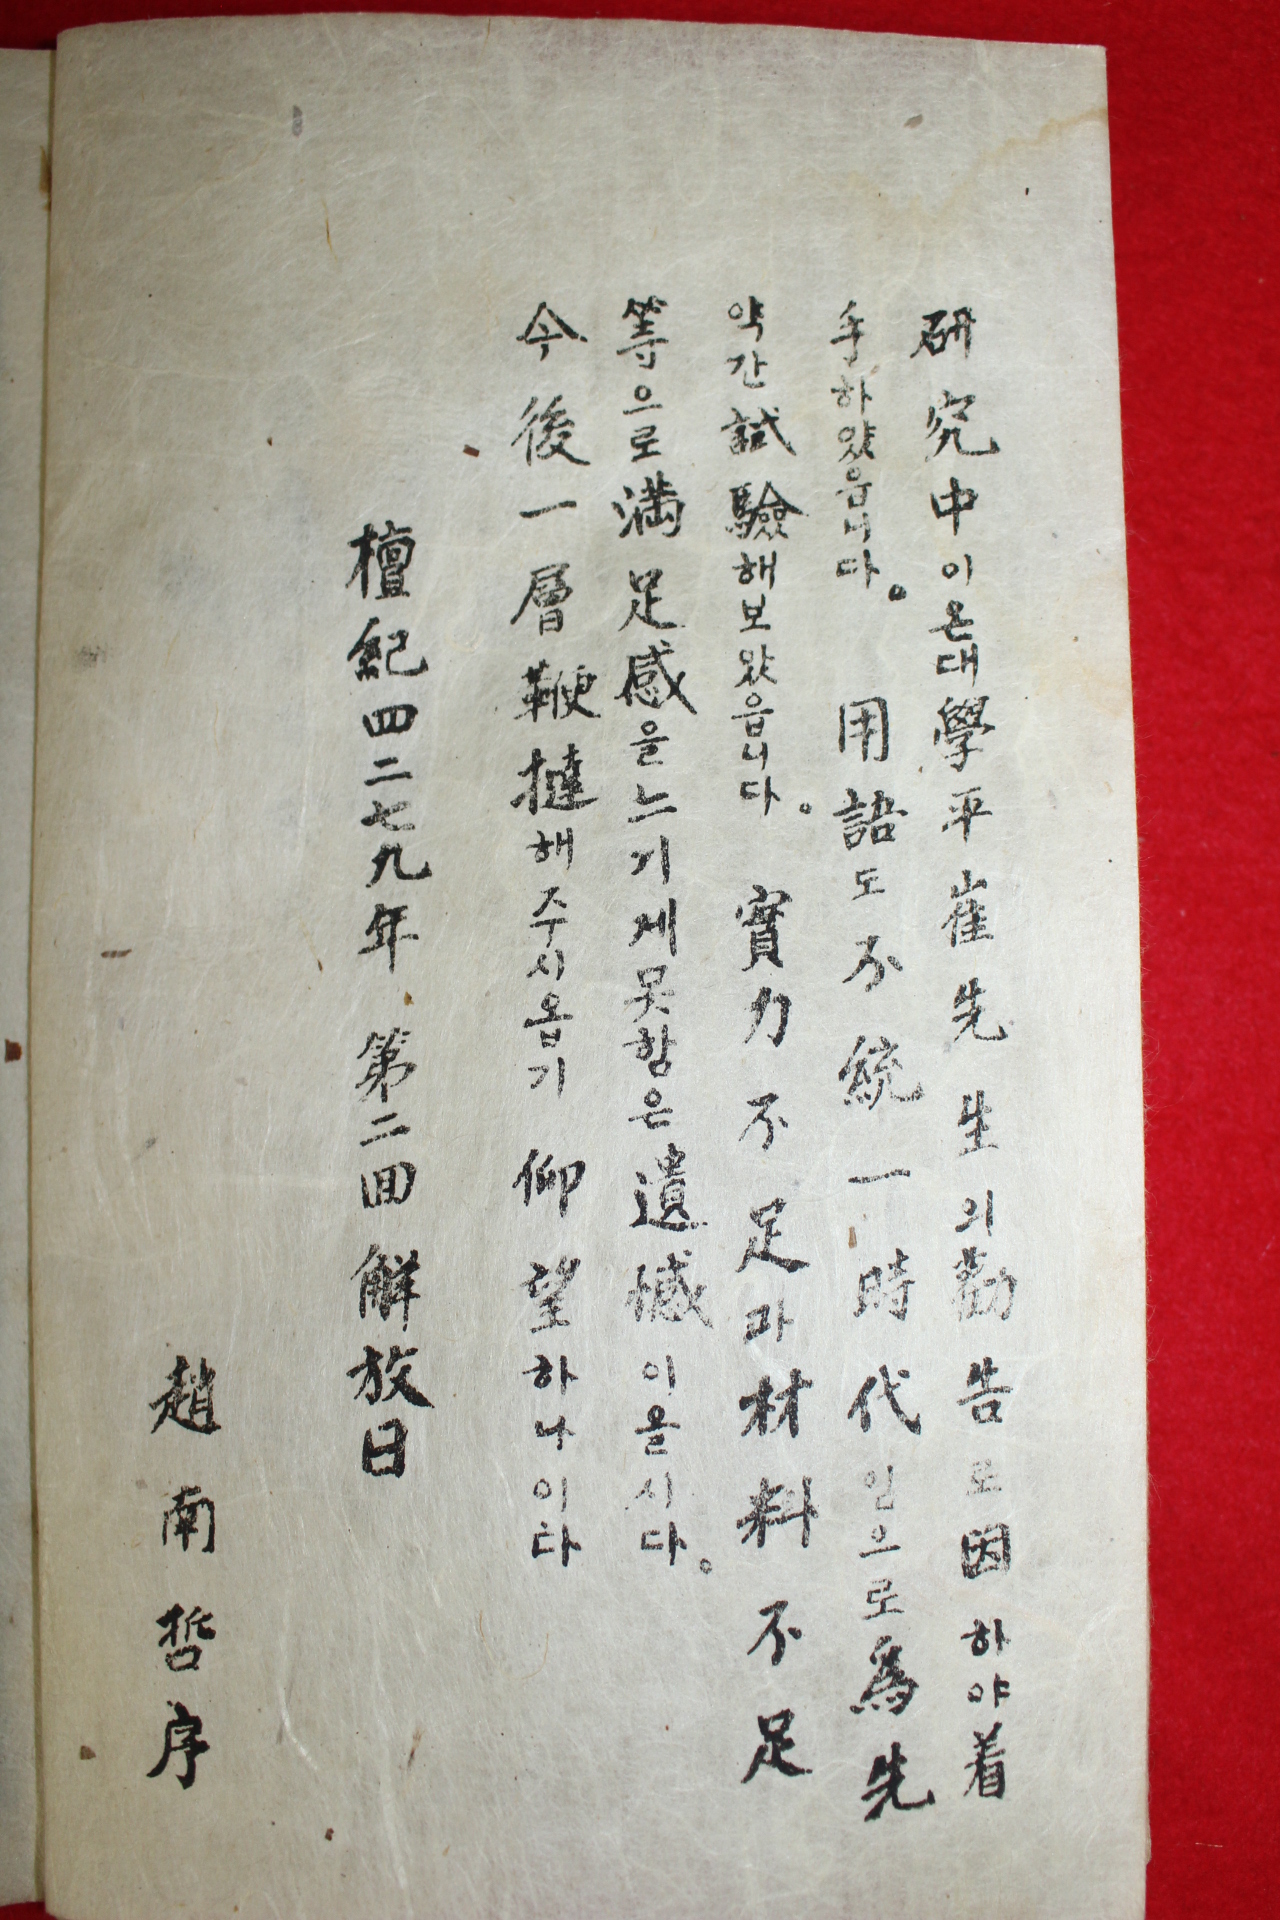 1946년 소장처가 확인되지않는 극희귀본 해방후 최초바둑책 조남철(趙南哲)위기보(圍碁譜)